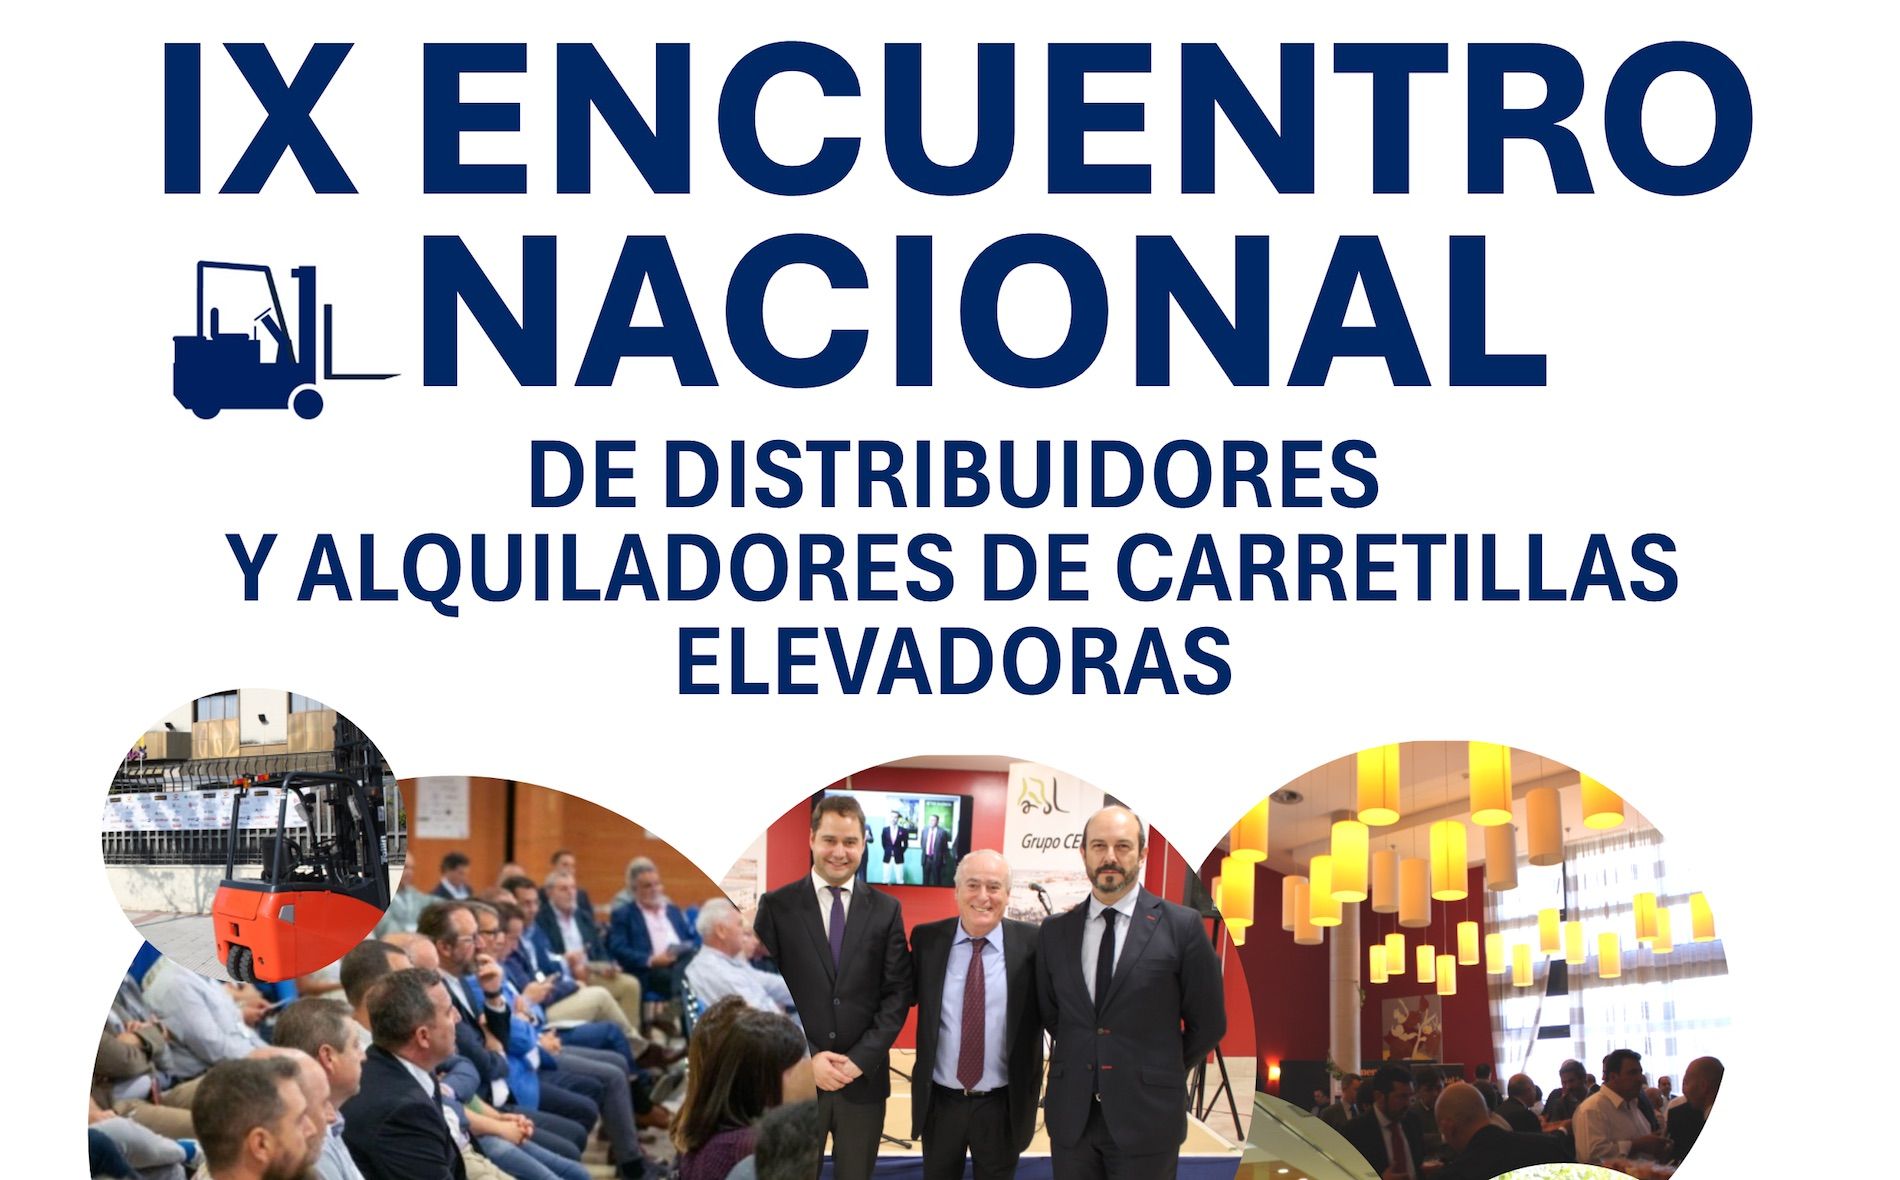 Encuentro Nacional de Distribuidores y Alquiladores de Carretillas Elevadoras